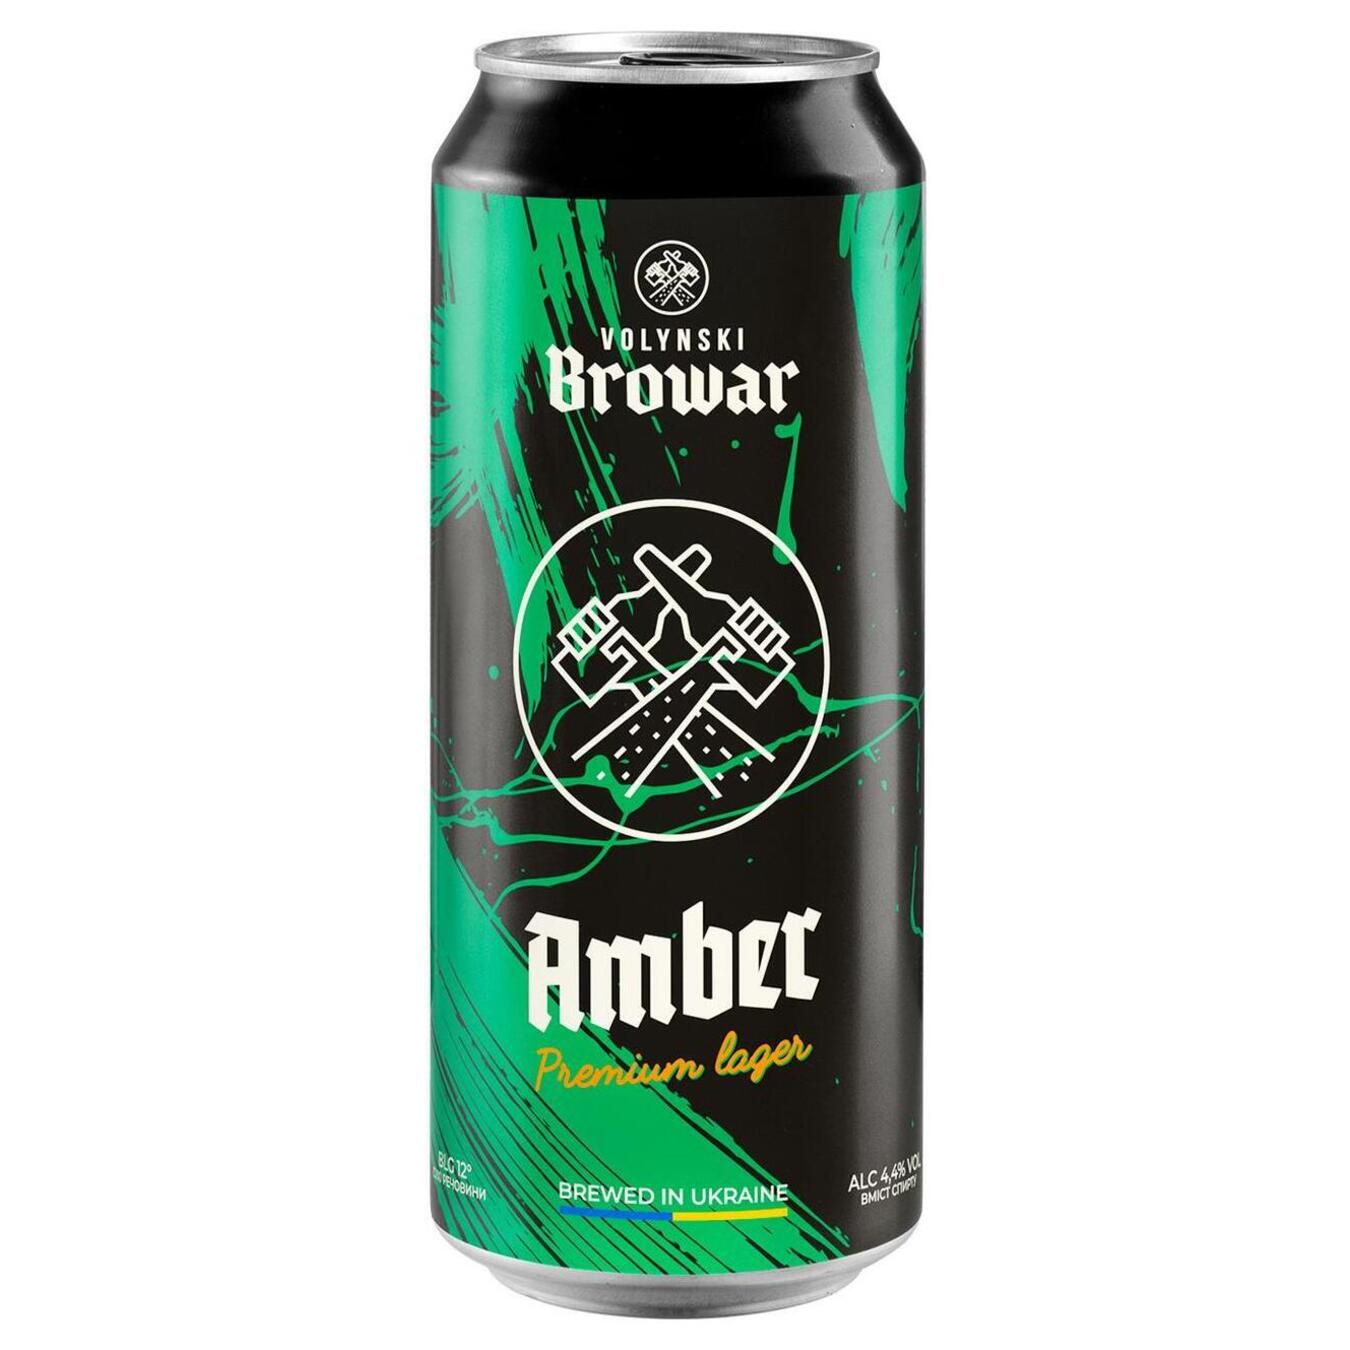 Пиво Волынский Бровар Amber светлое нефильтрованное 4,4% 0,5л